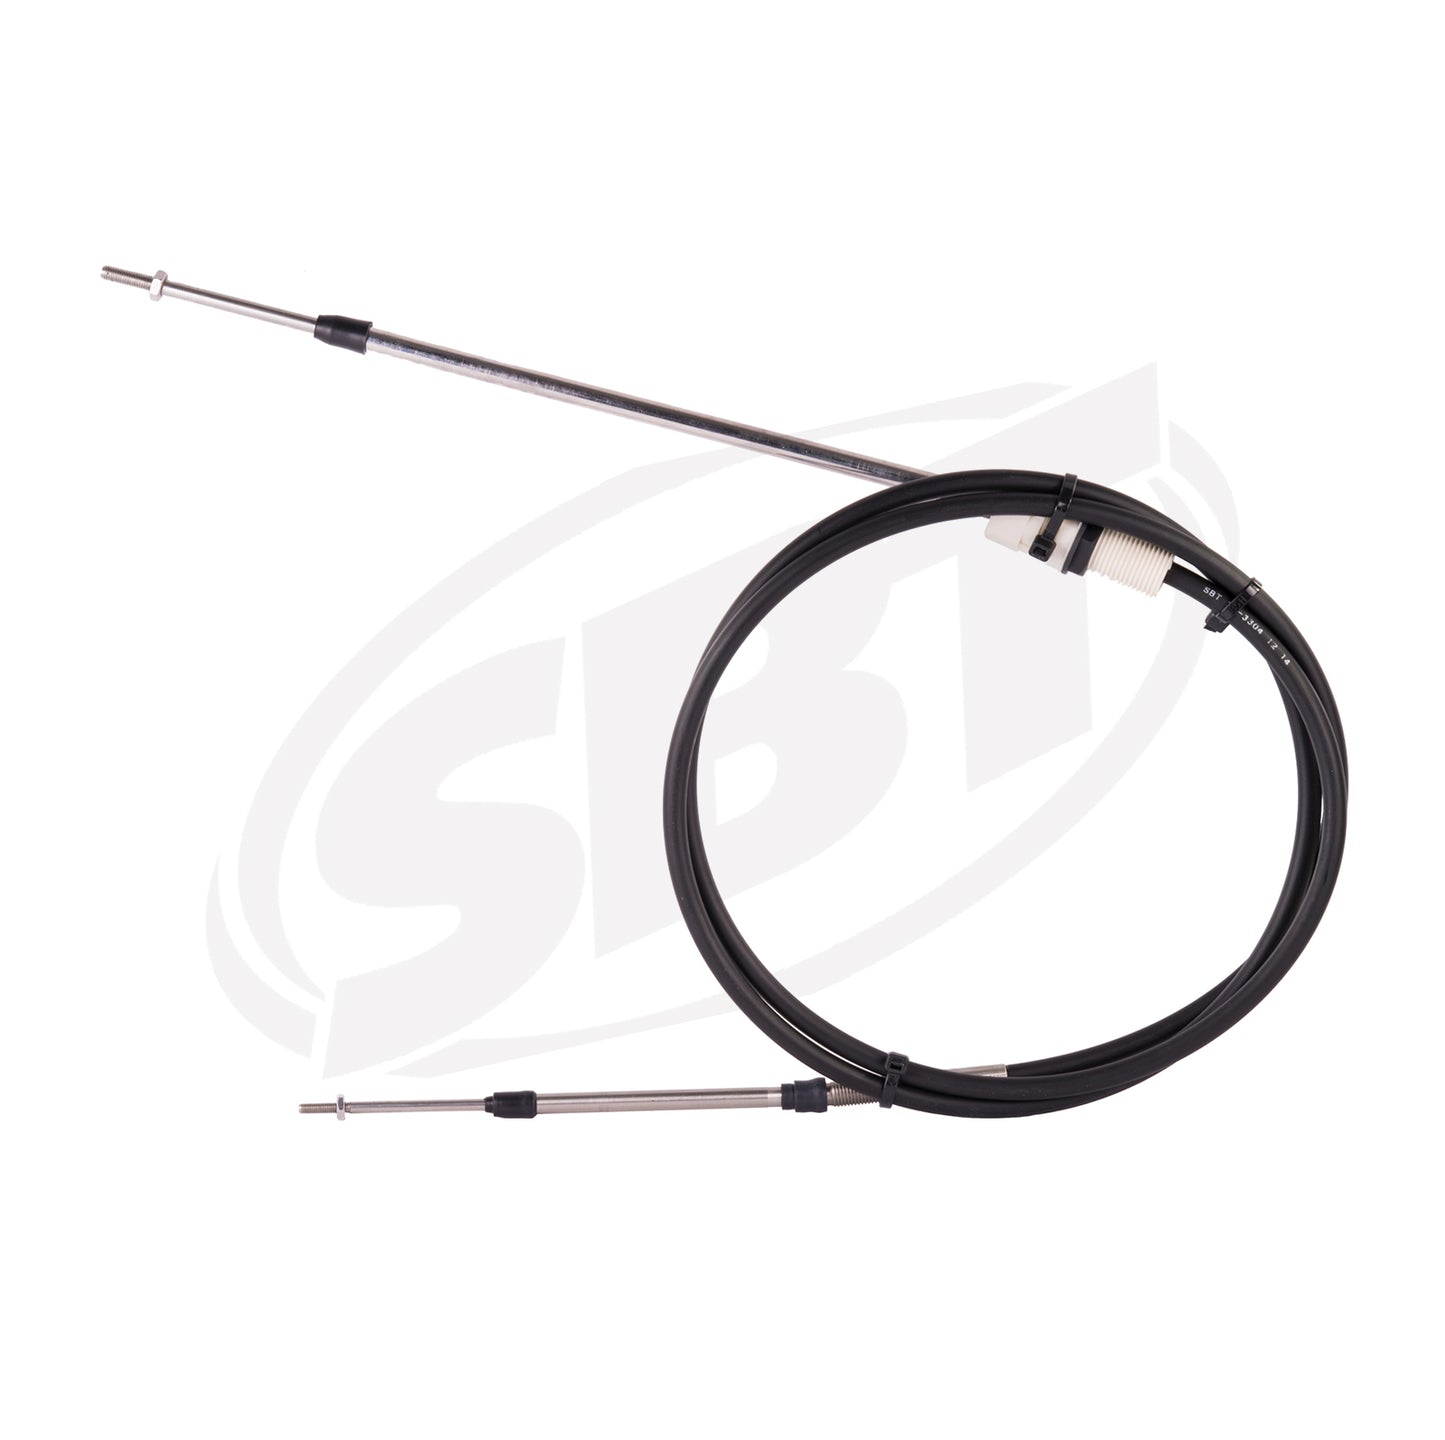 SBT Polaris Steering Cable INTL SLT /INTL SLTX /SLTX /SLT 700 /SLT 780 7080621 1996 1997